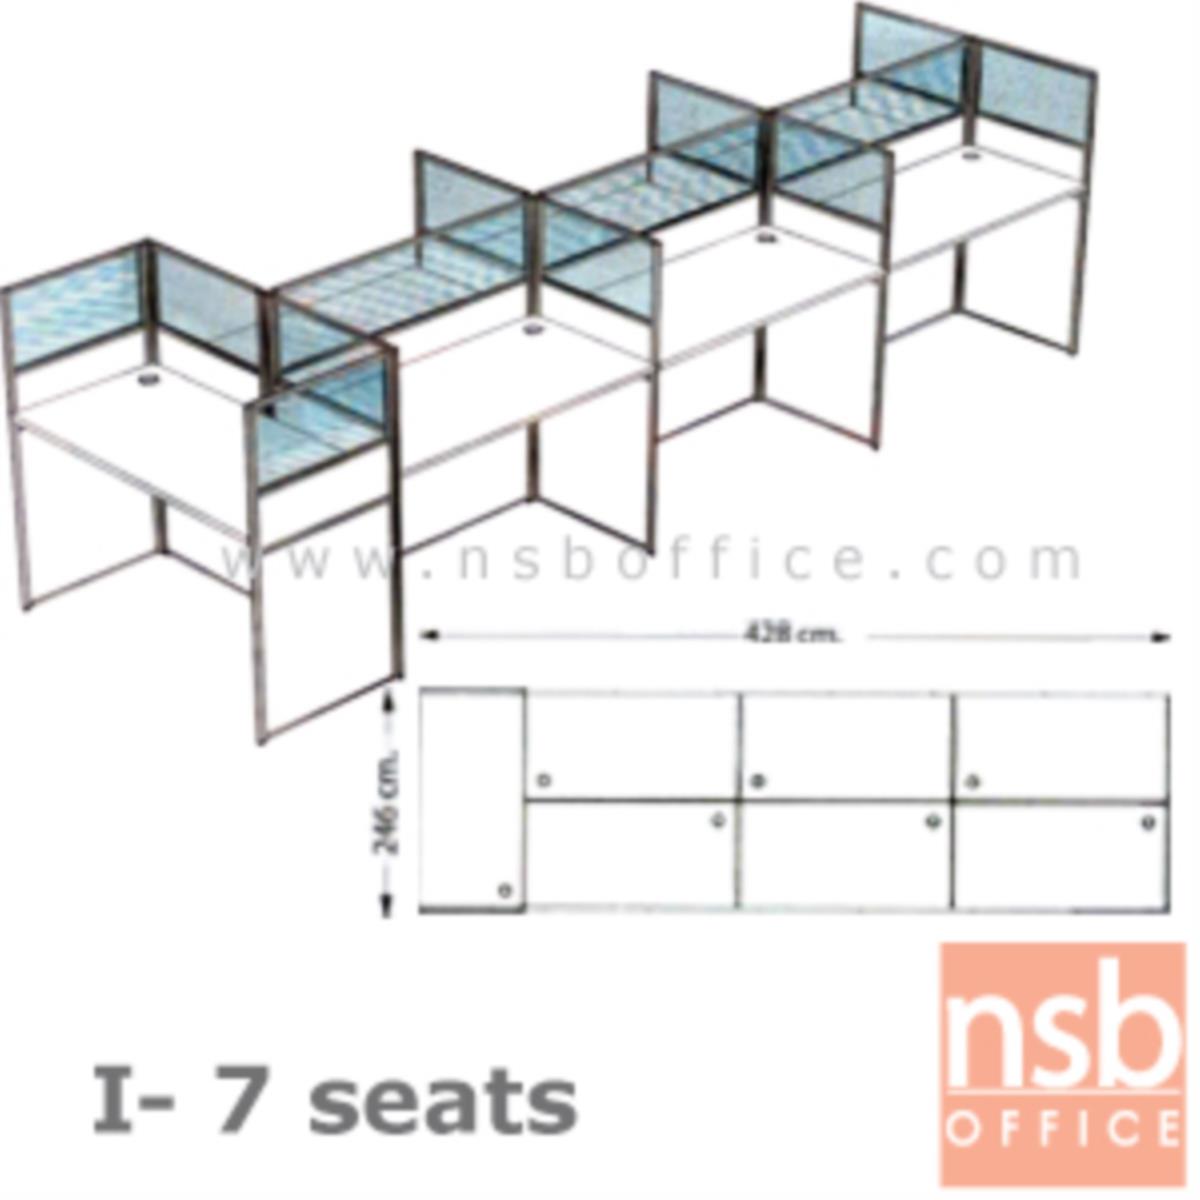 A04A092:ชุดโต๊ะทำงานกลุ่ม 7 ที่นั่ง   ขนาดรวม 428W*124.6D cm. พร้อมพาร์ทิชั่นครึ่งกระจกขัดลาย